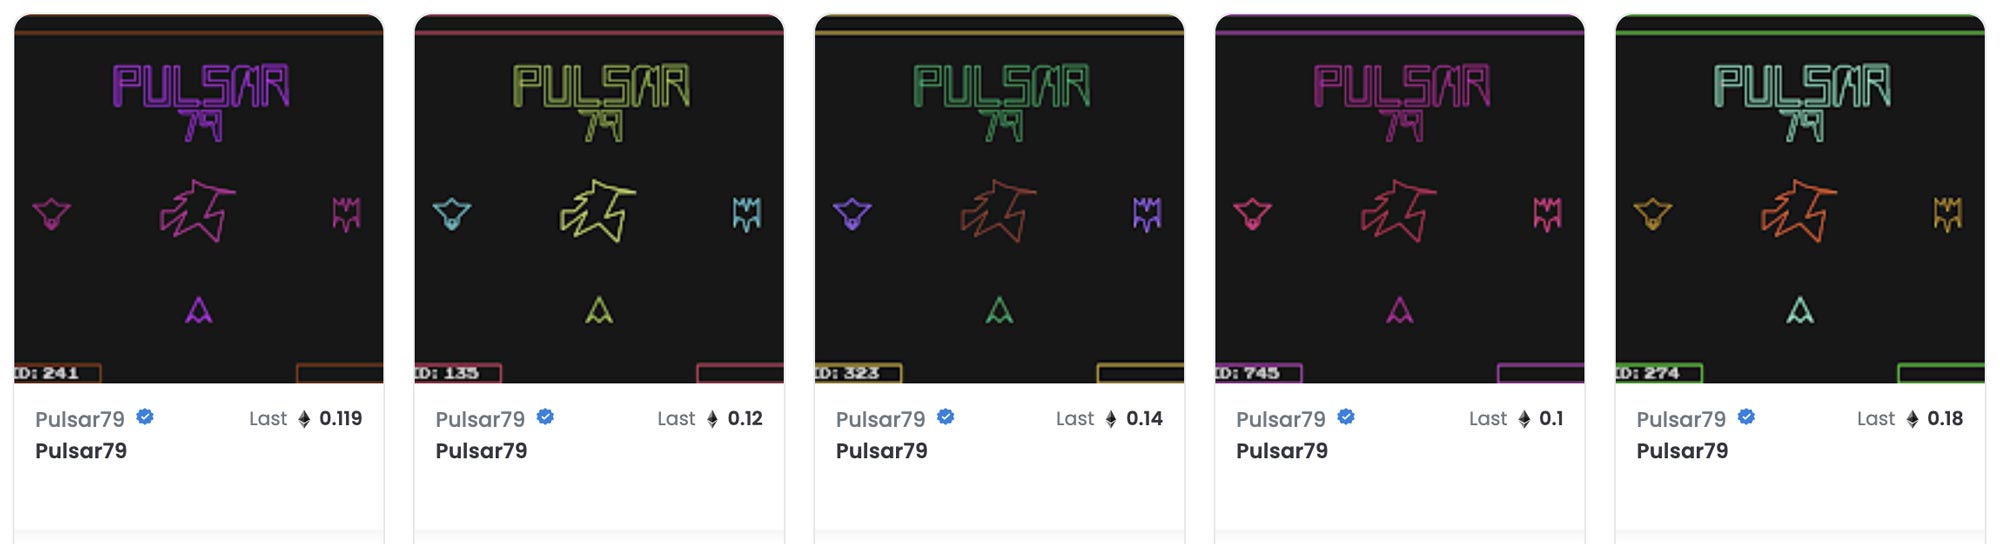 Pulsar79-Sales